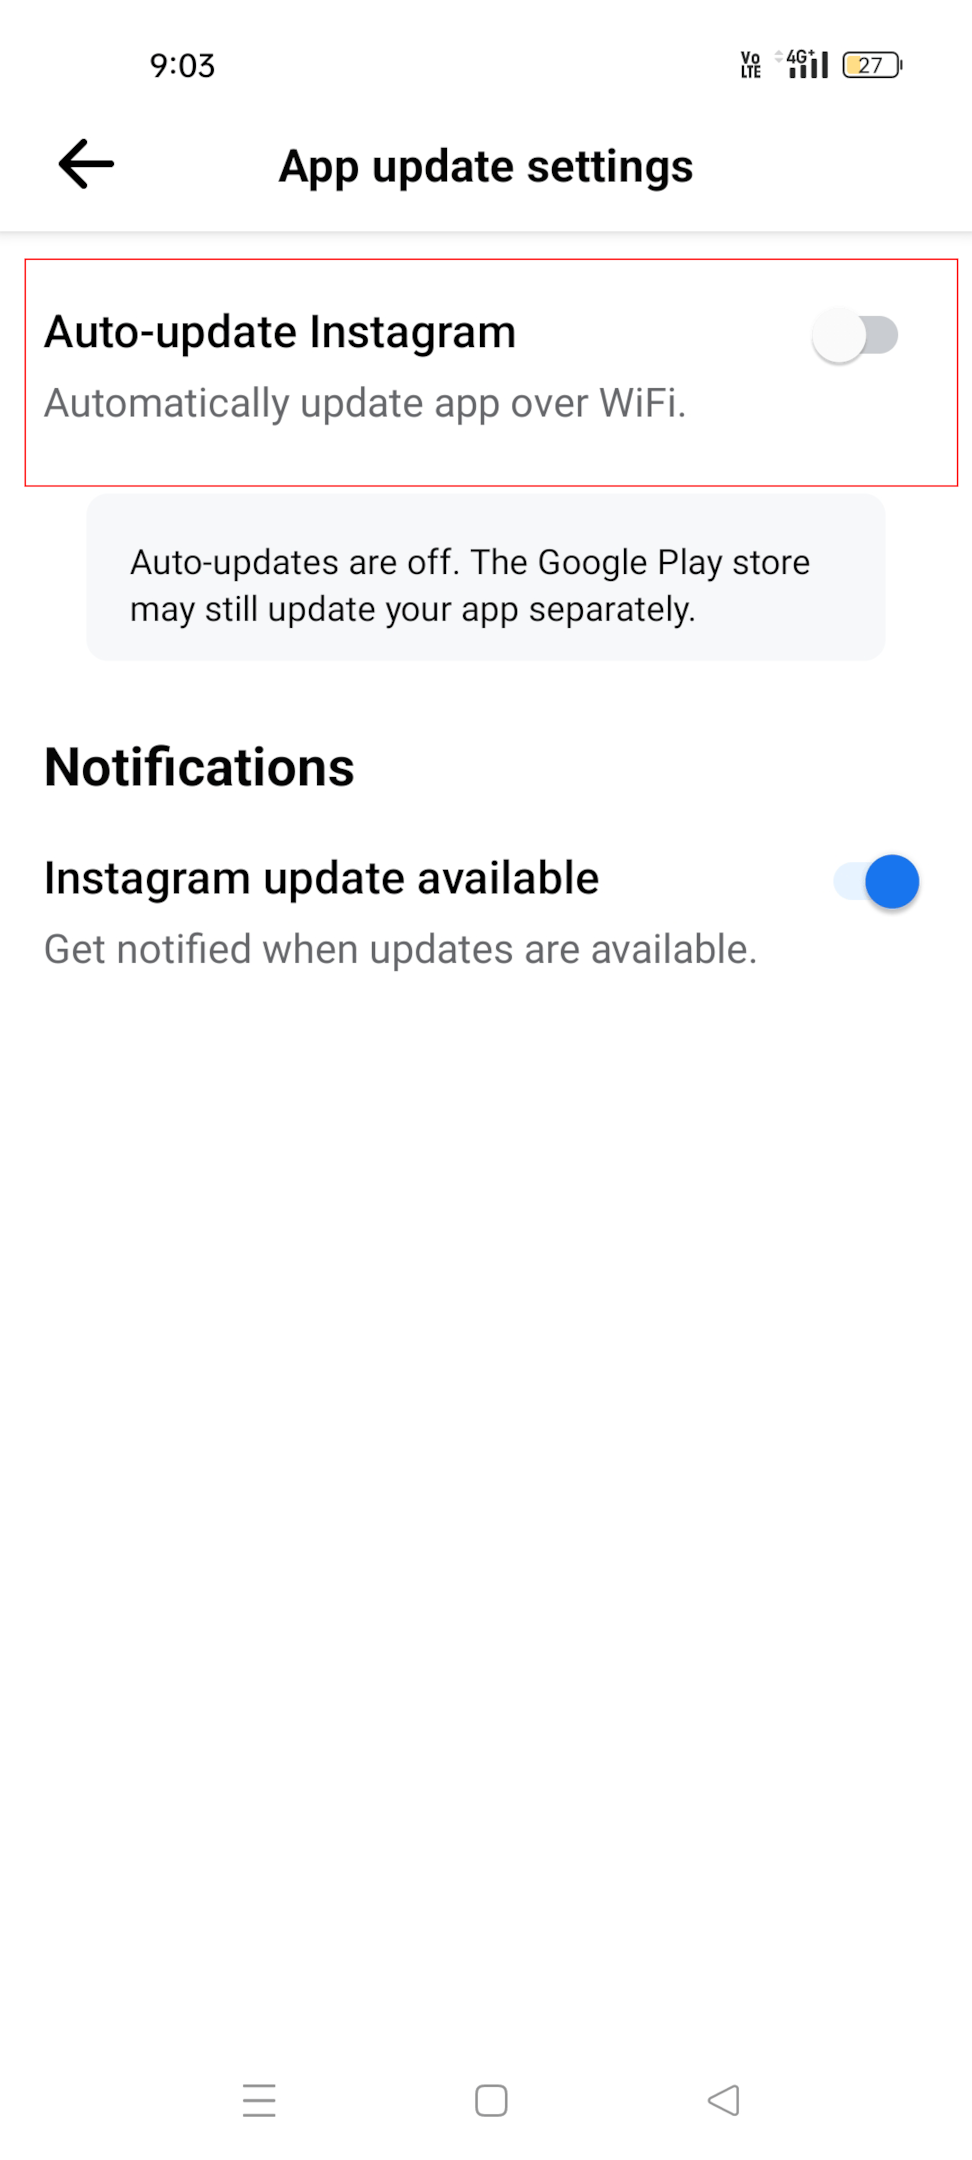 Auto-update Instagram 